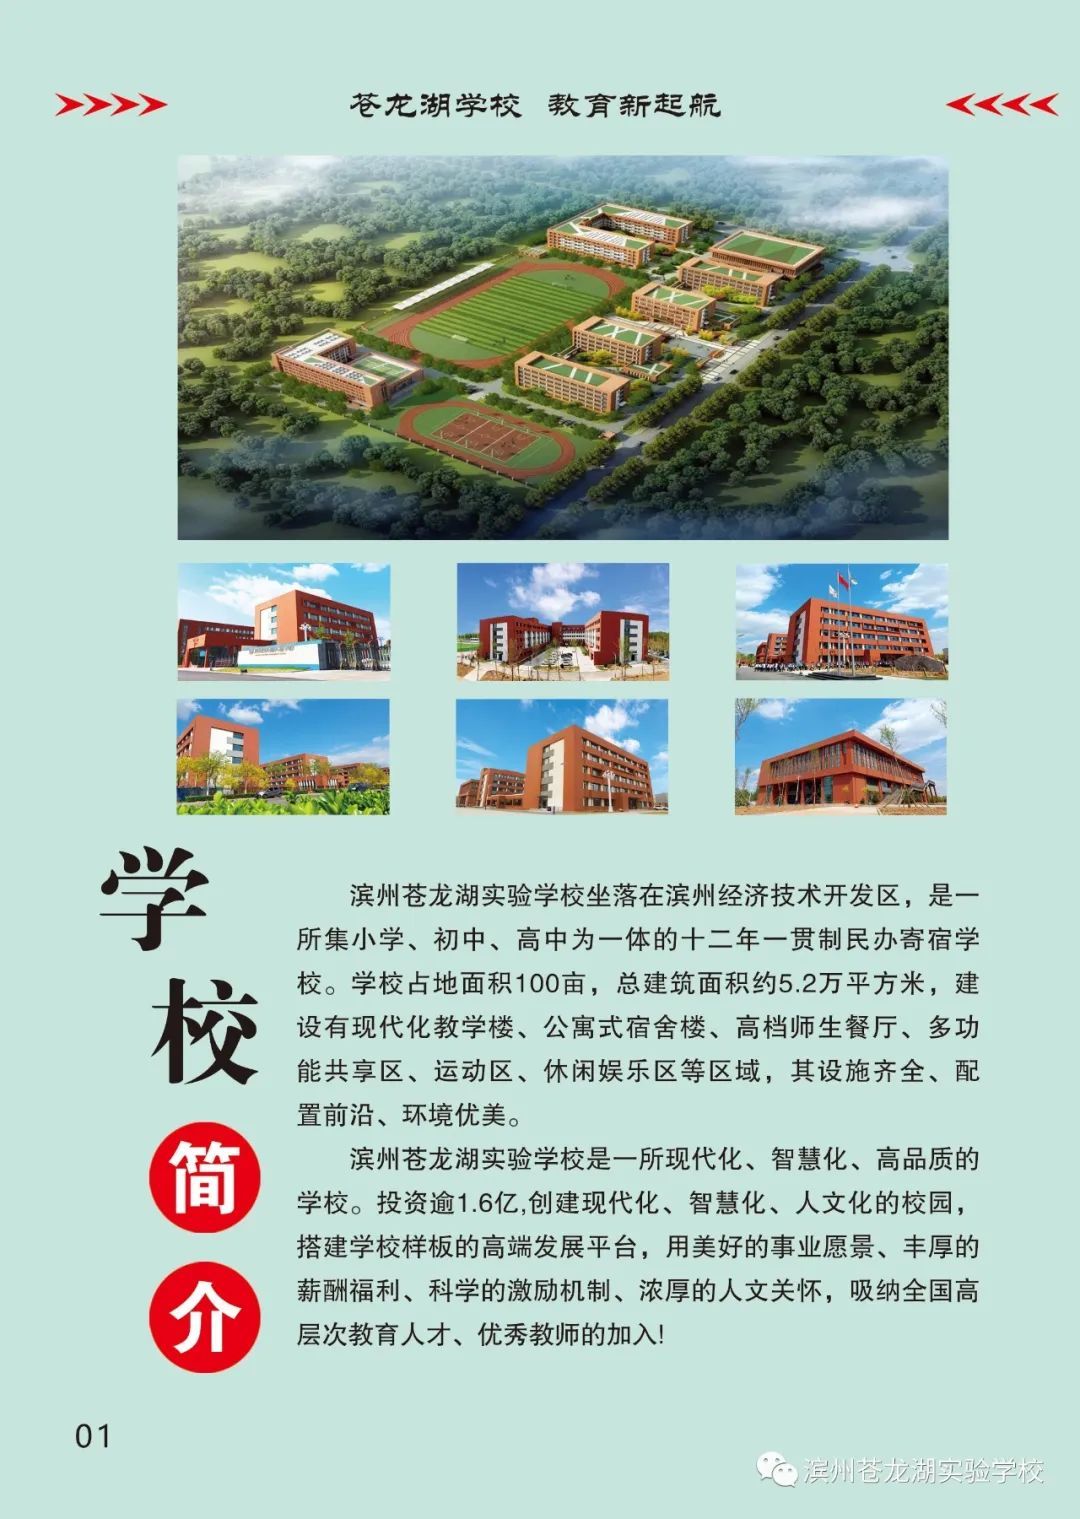 简章|滨州苍龙湖实验学校2021年秋季招生简章